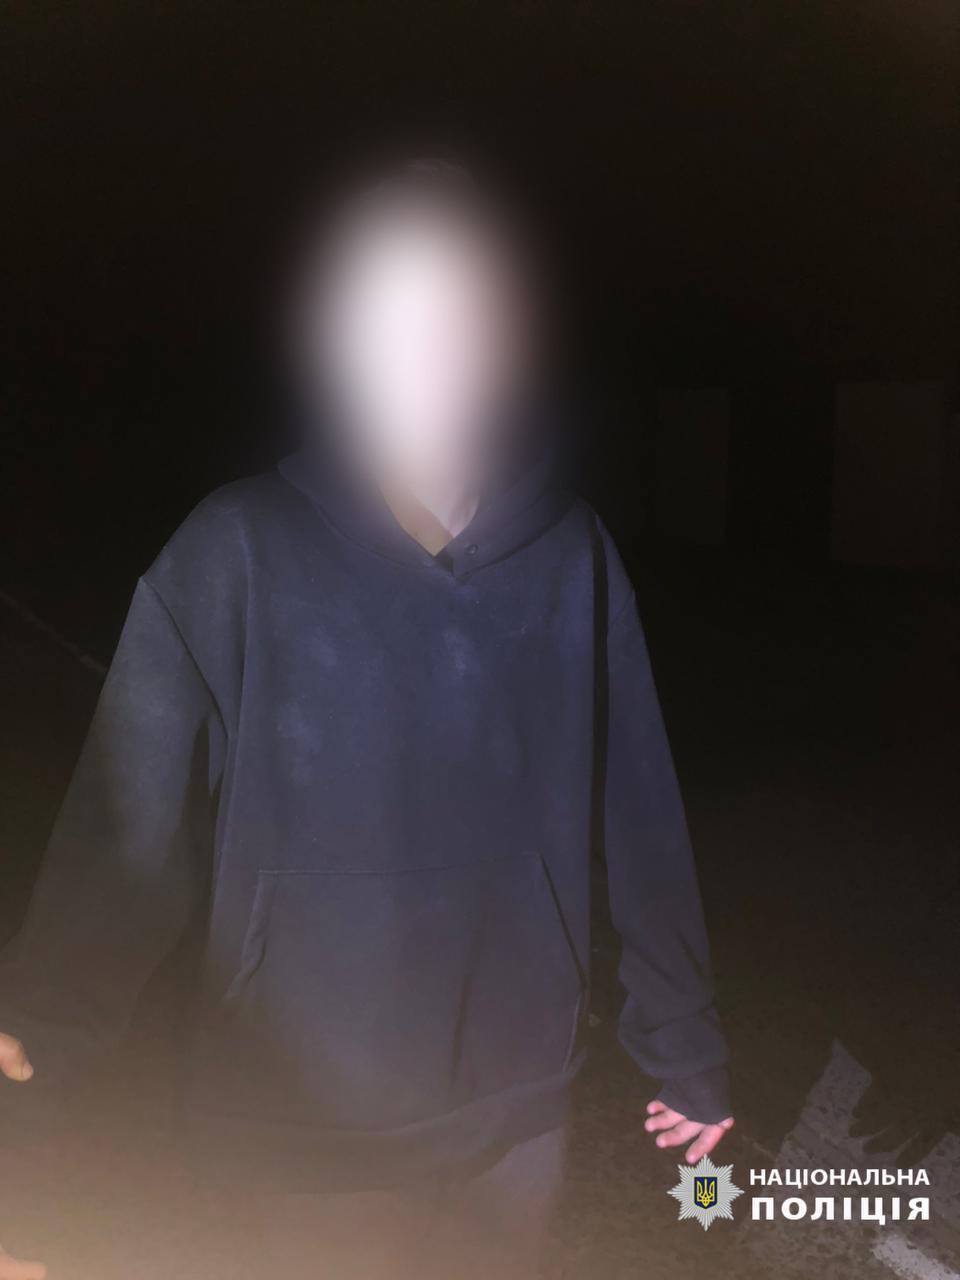 На Київщині 15-річний хлопець під час конфлікту підірвав гранату у під’їзді будинку: є постраждалі. Фото